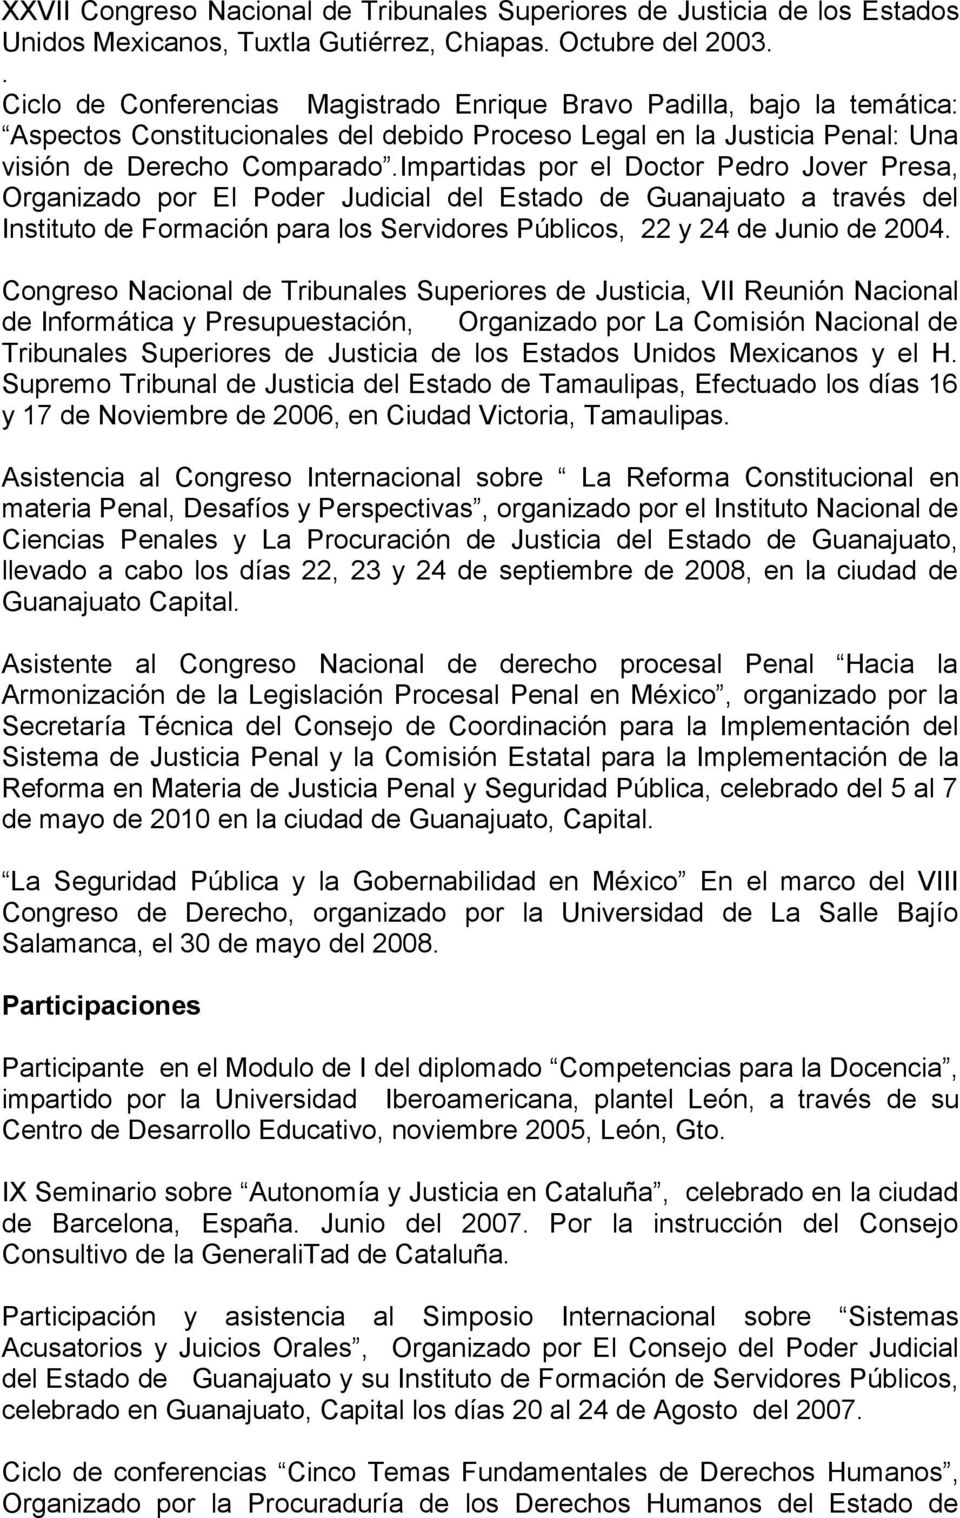 Impartidas por el Doctor Pedro Jover Presa, Organizado por El Poder Judicial del Estado de Guanajuato a través del Instituto de Formación para los Servidores Públicos, 22 y 24 de Junio de 2004.